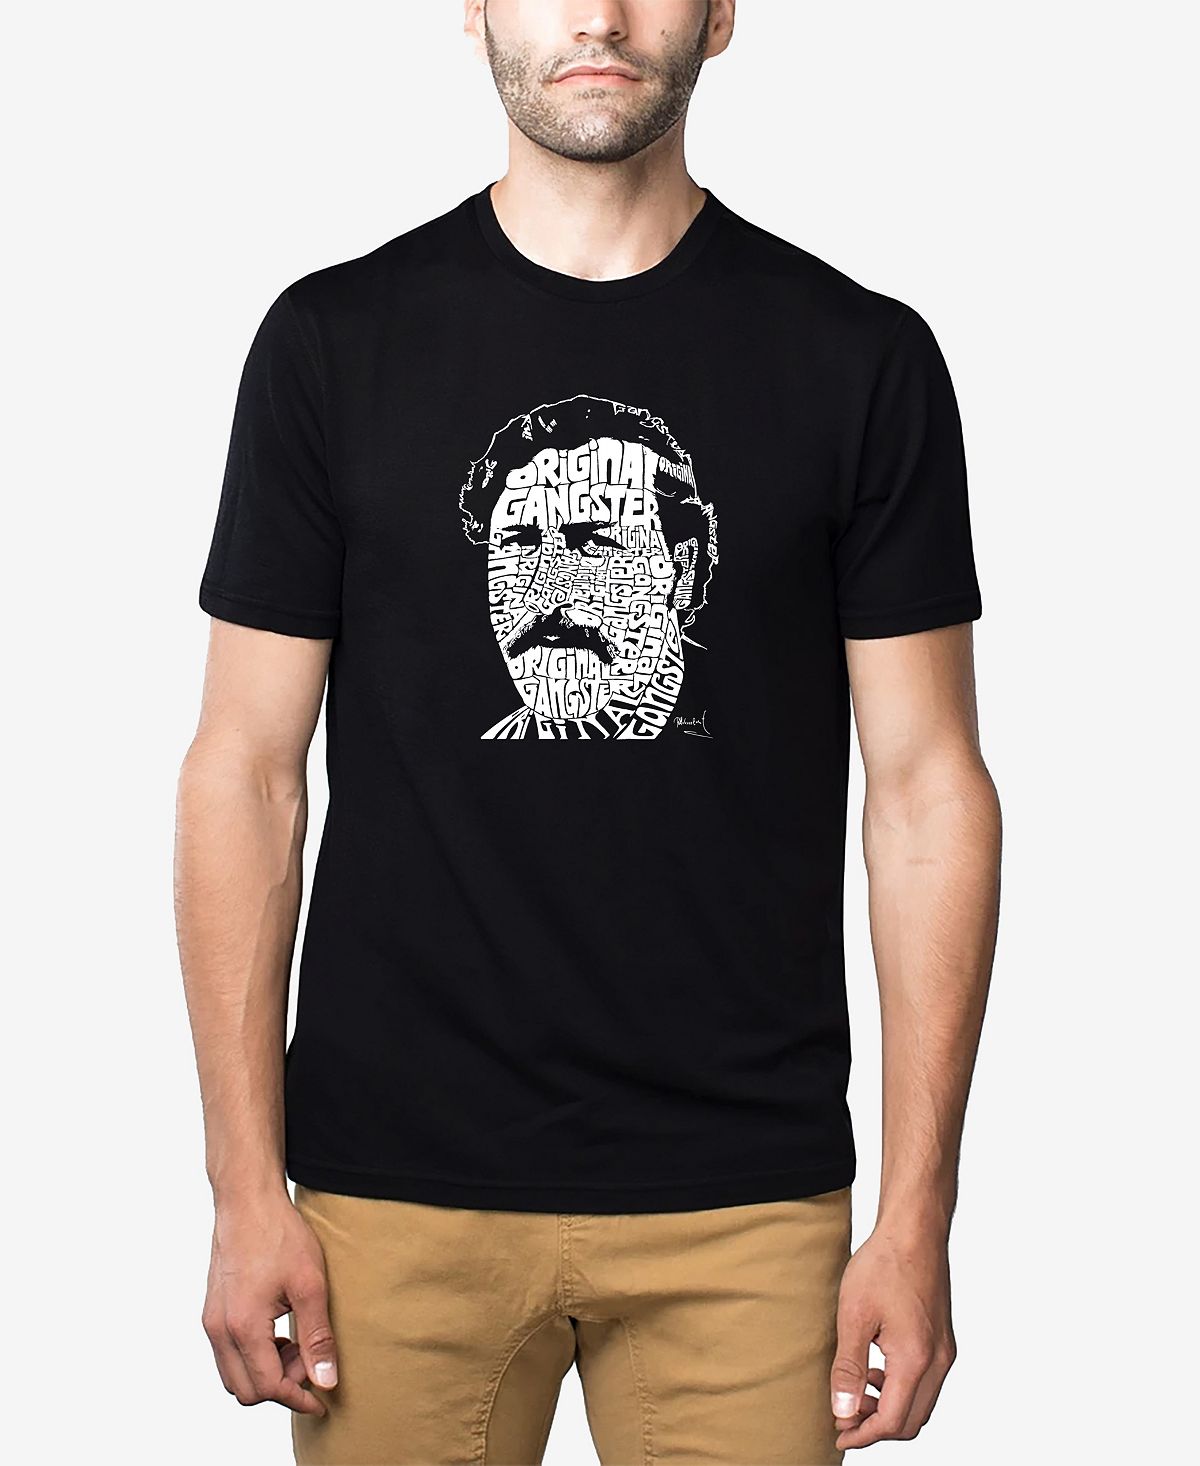 Мужская футболка premium blend word art pablo escobar LA Pop Art, черный георгина геллери пабло